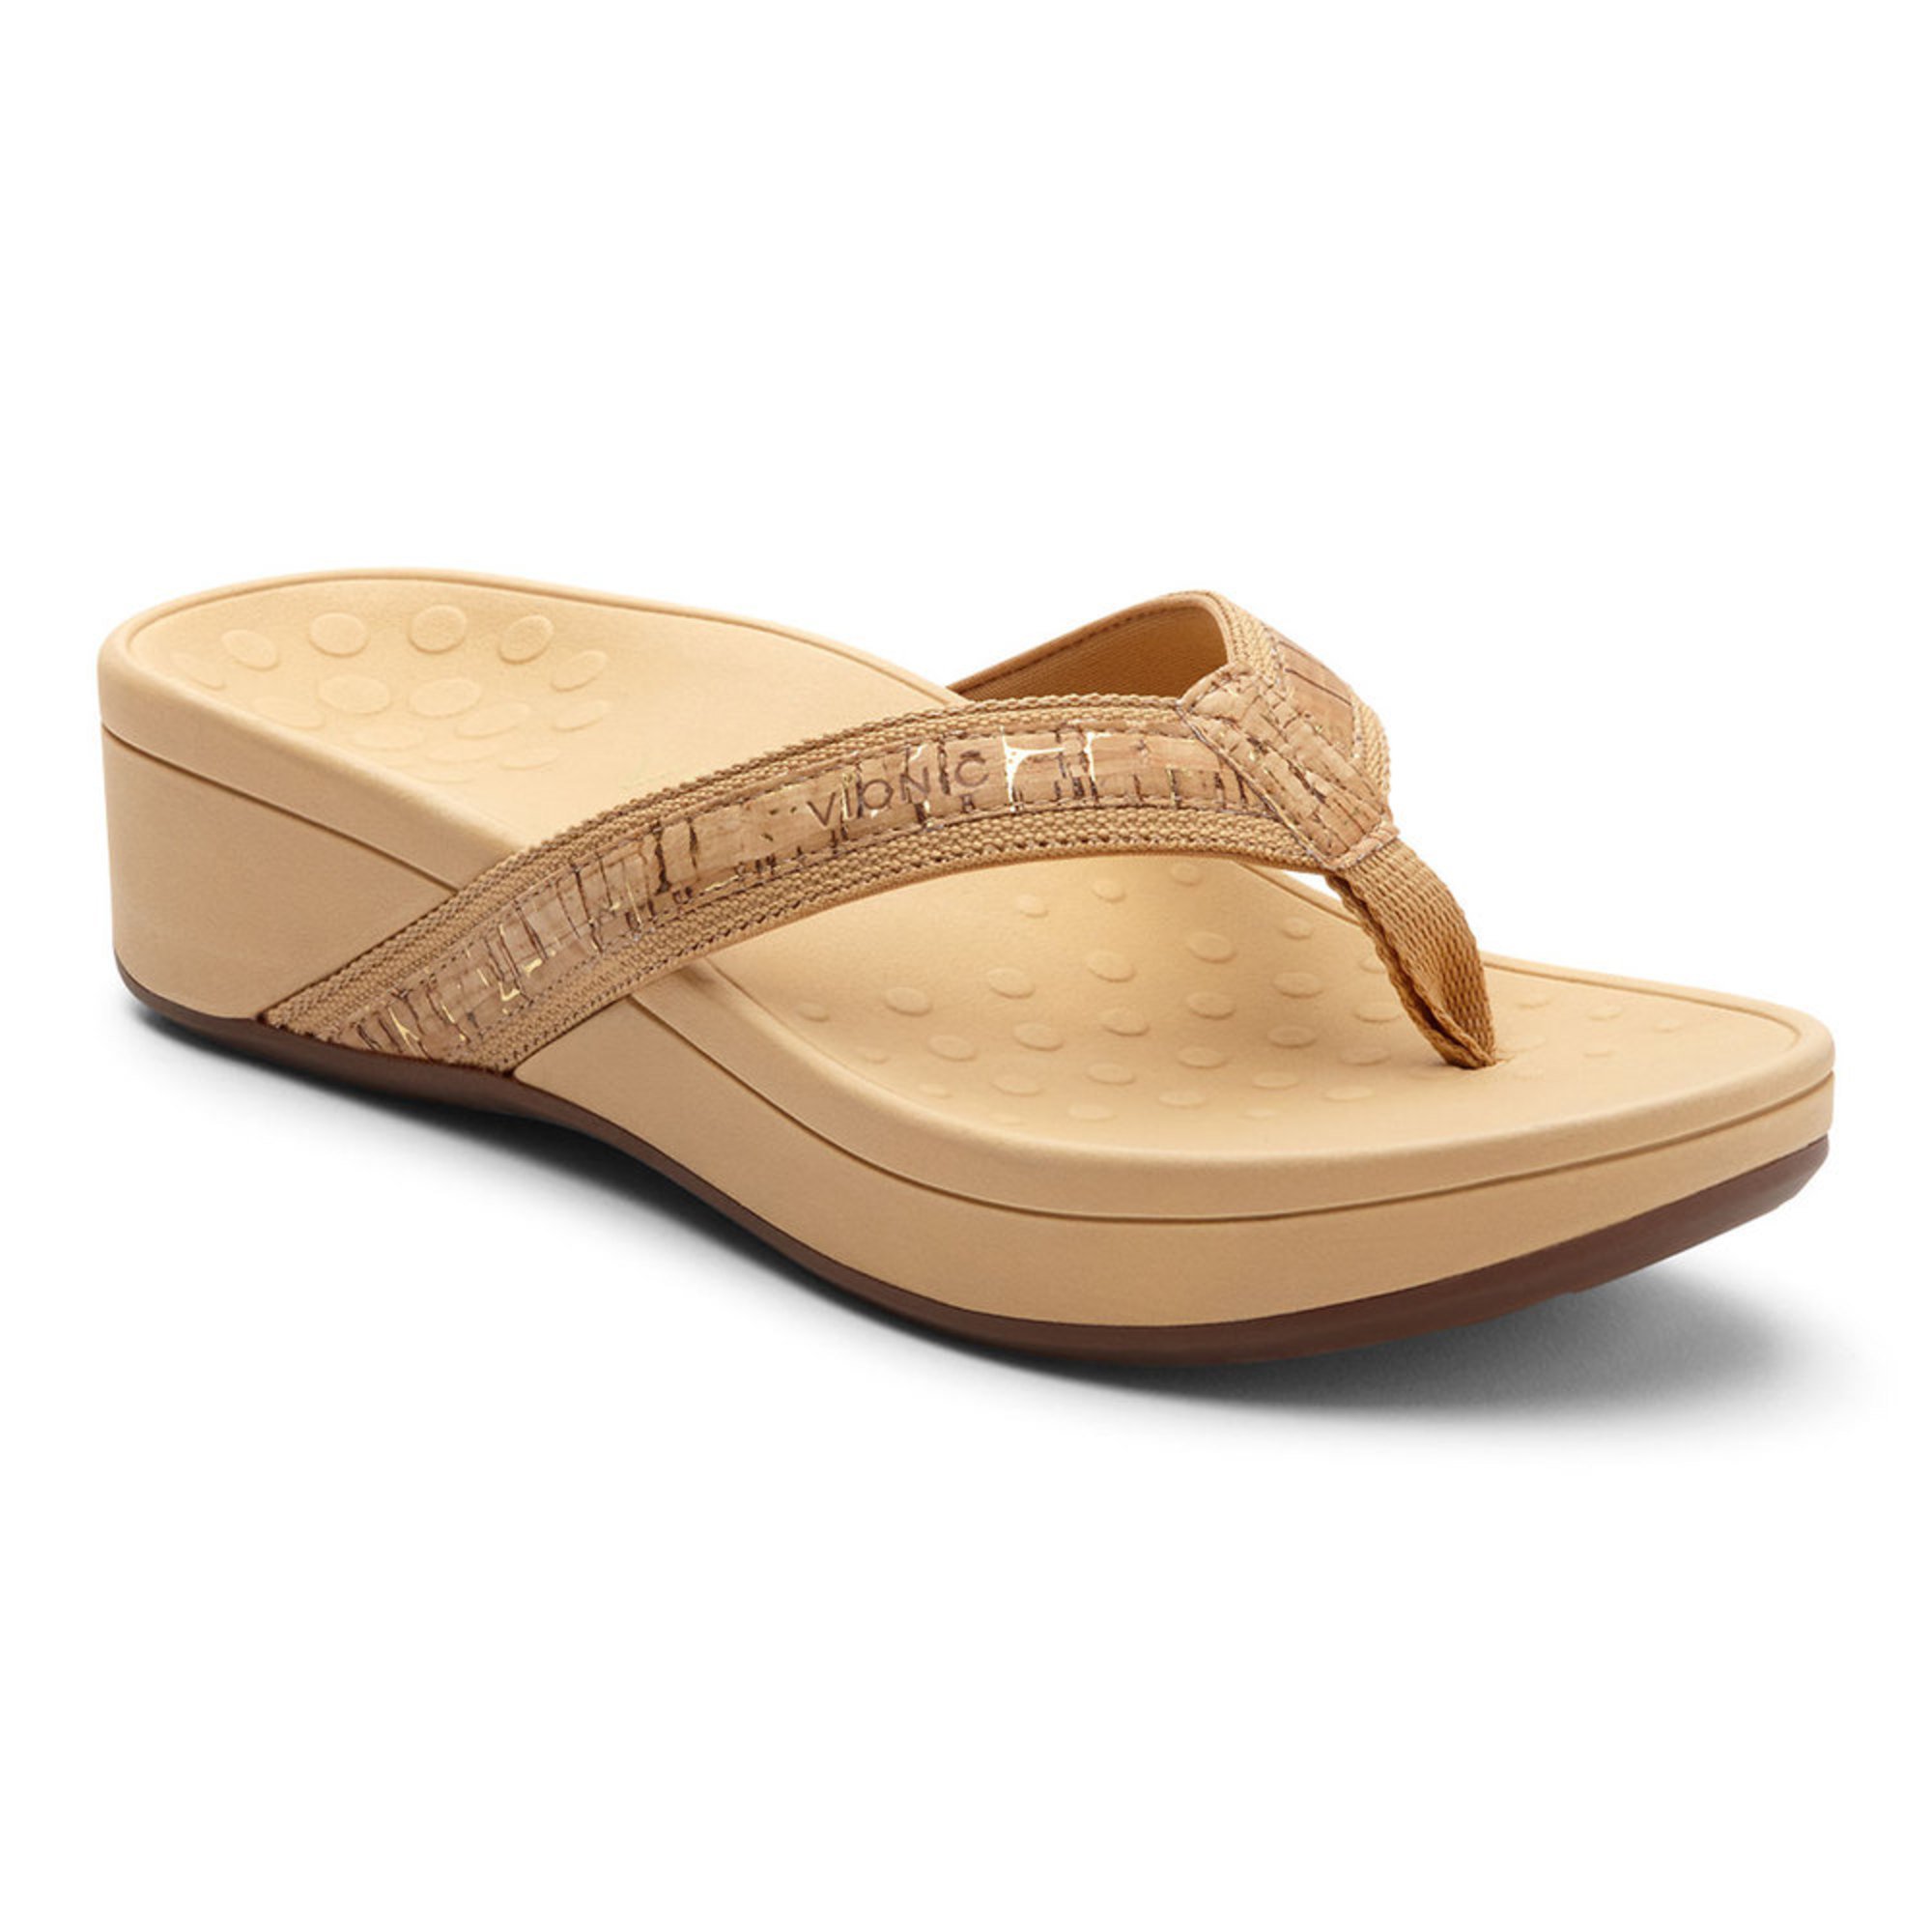 Vionic Women's Pacific High Tide Cork Flip Flop Sandal | Flip Flop ...